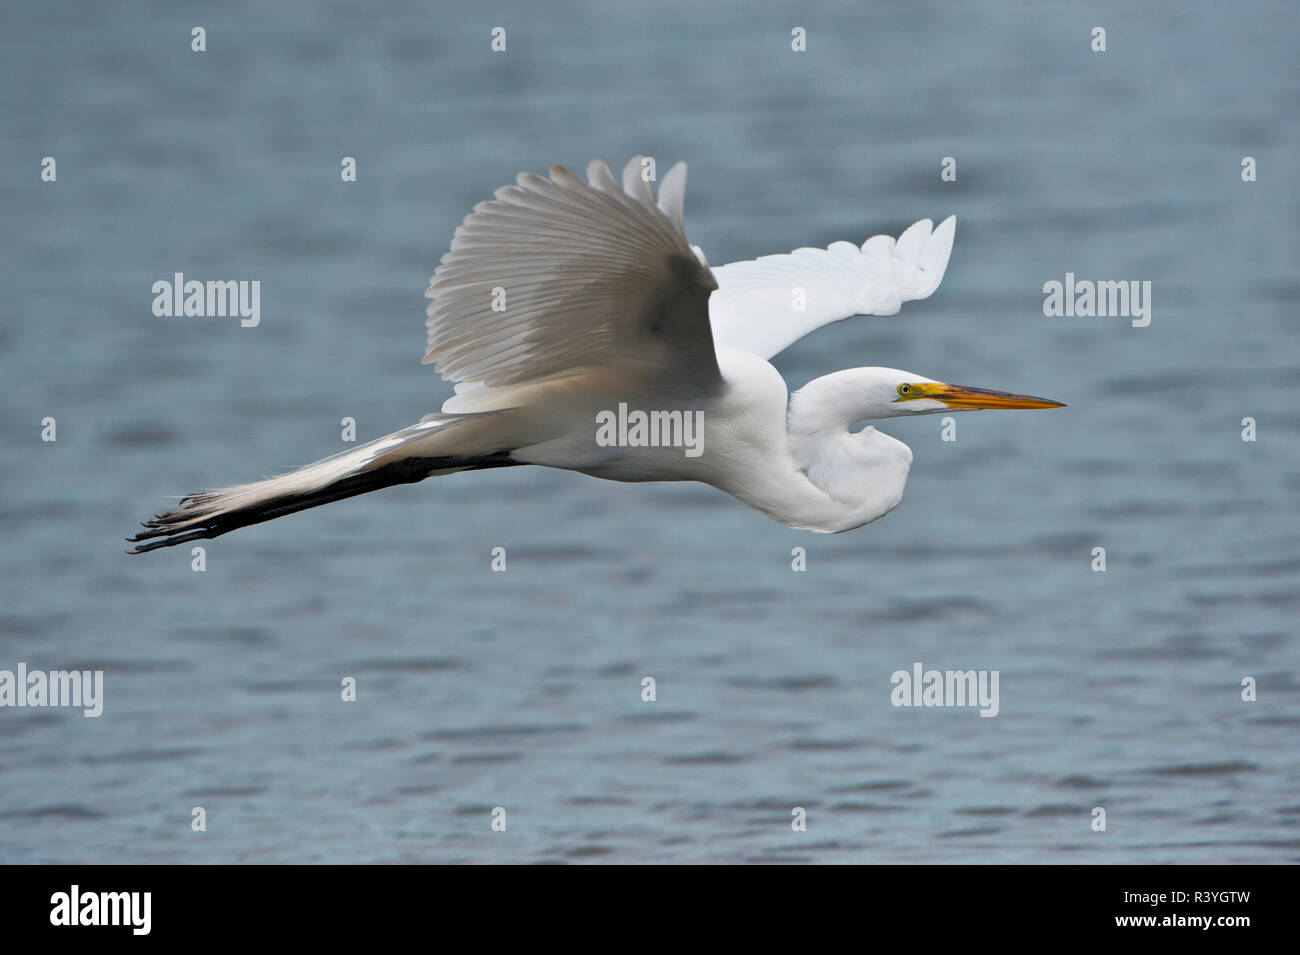 USA, Florida, Venice. Audubon Rookery, Great Egret flying Stock Photo